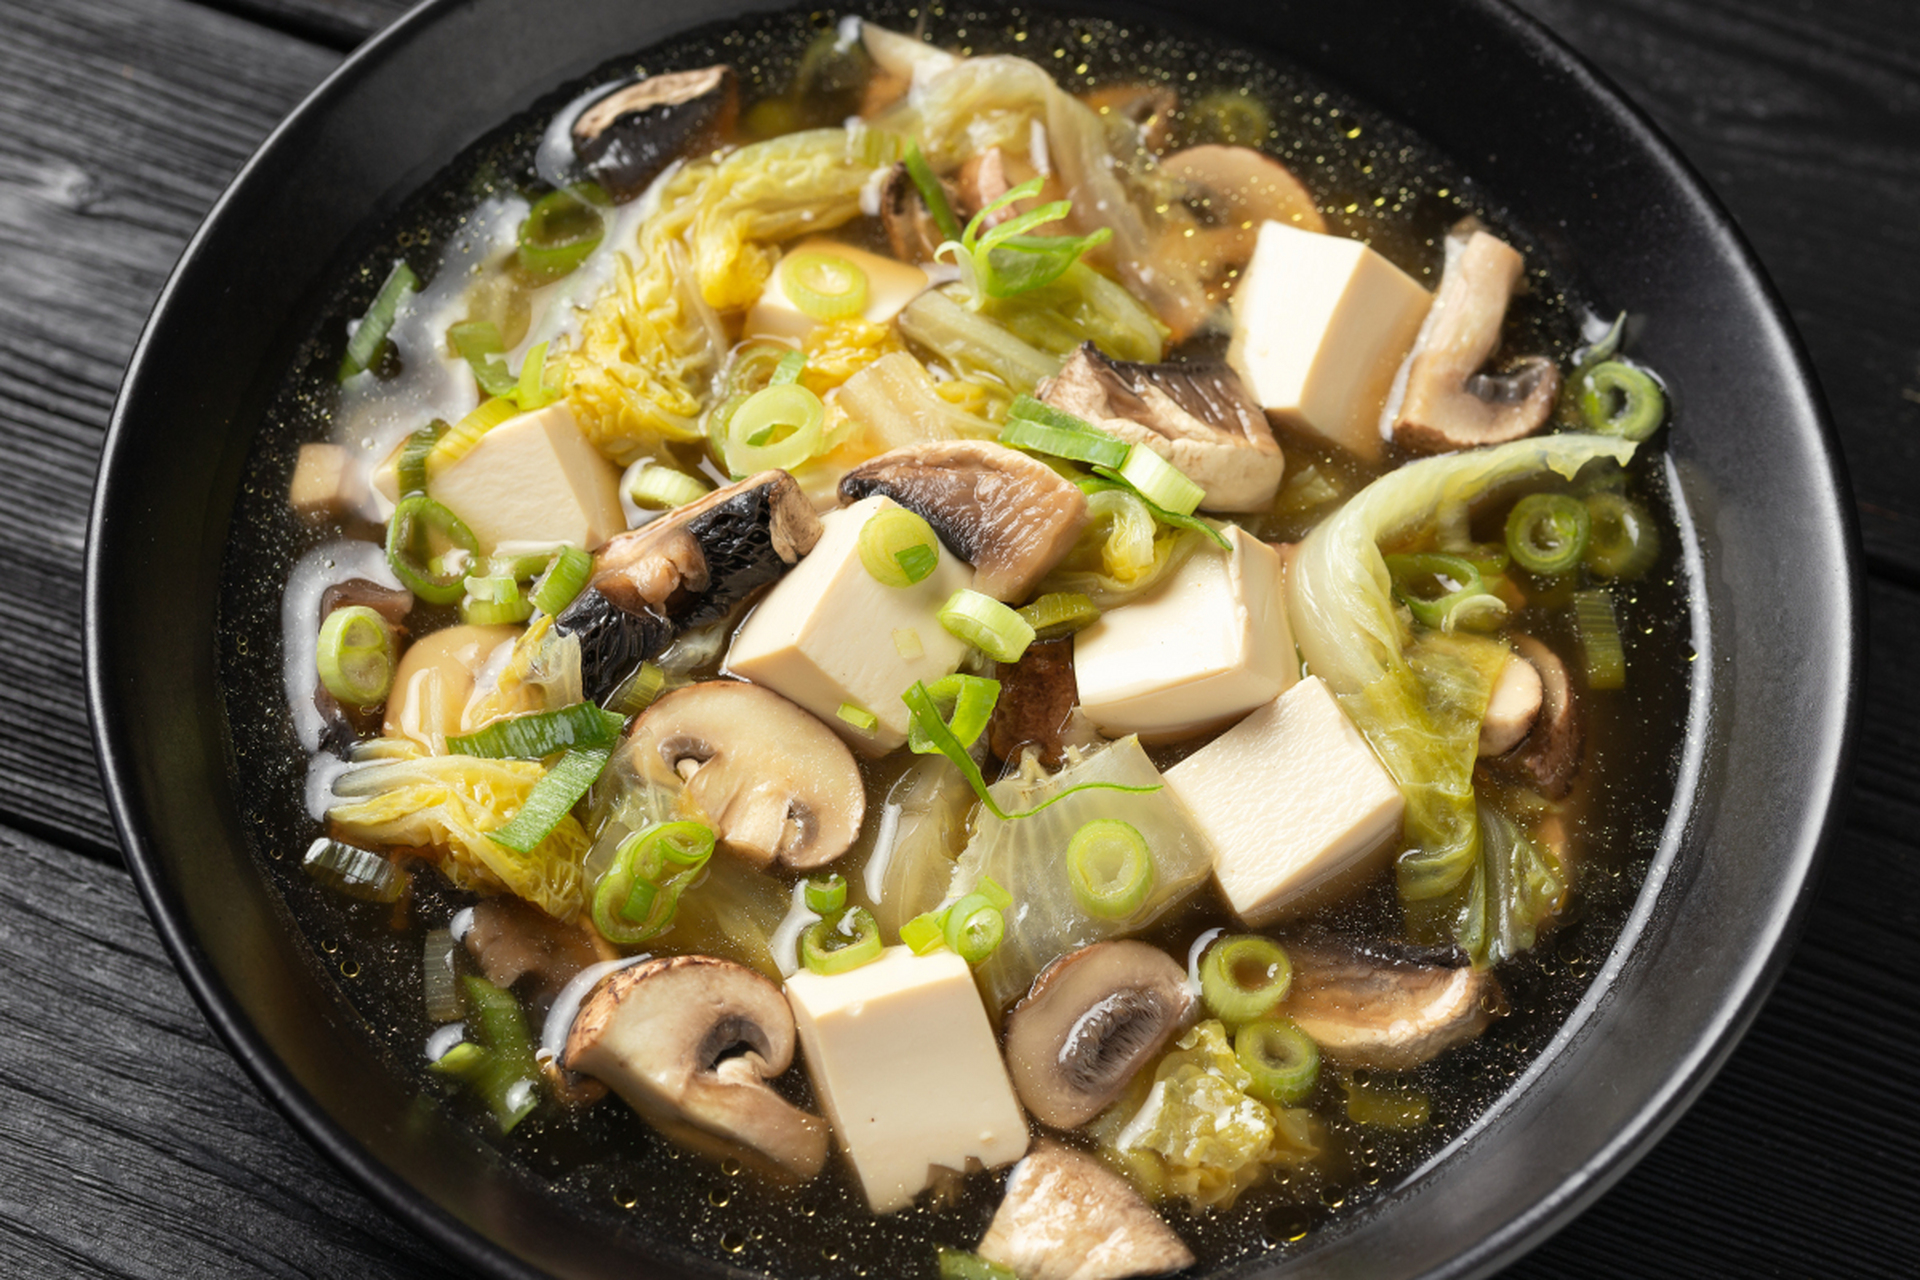 一道香菇青菜炖豆腐,让你在春日里品尝健康的美食